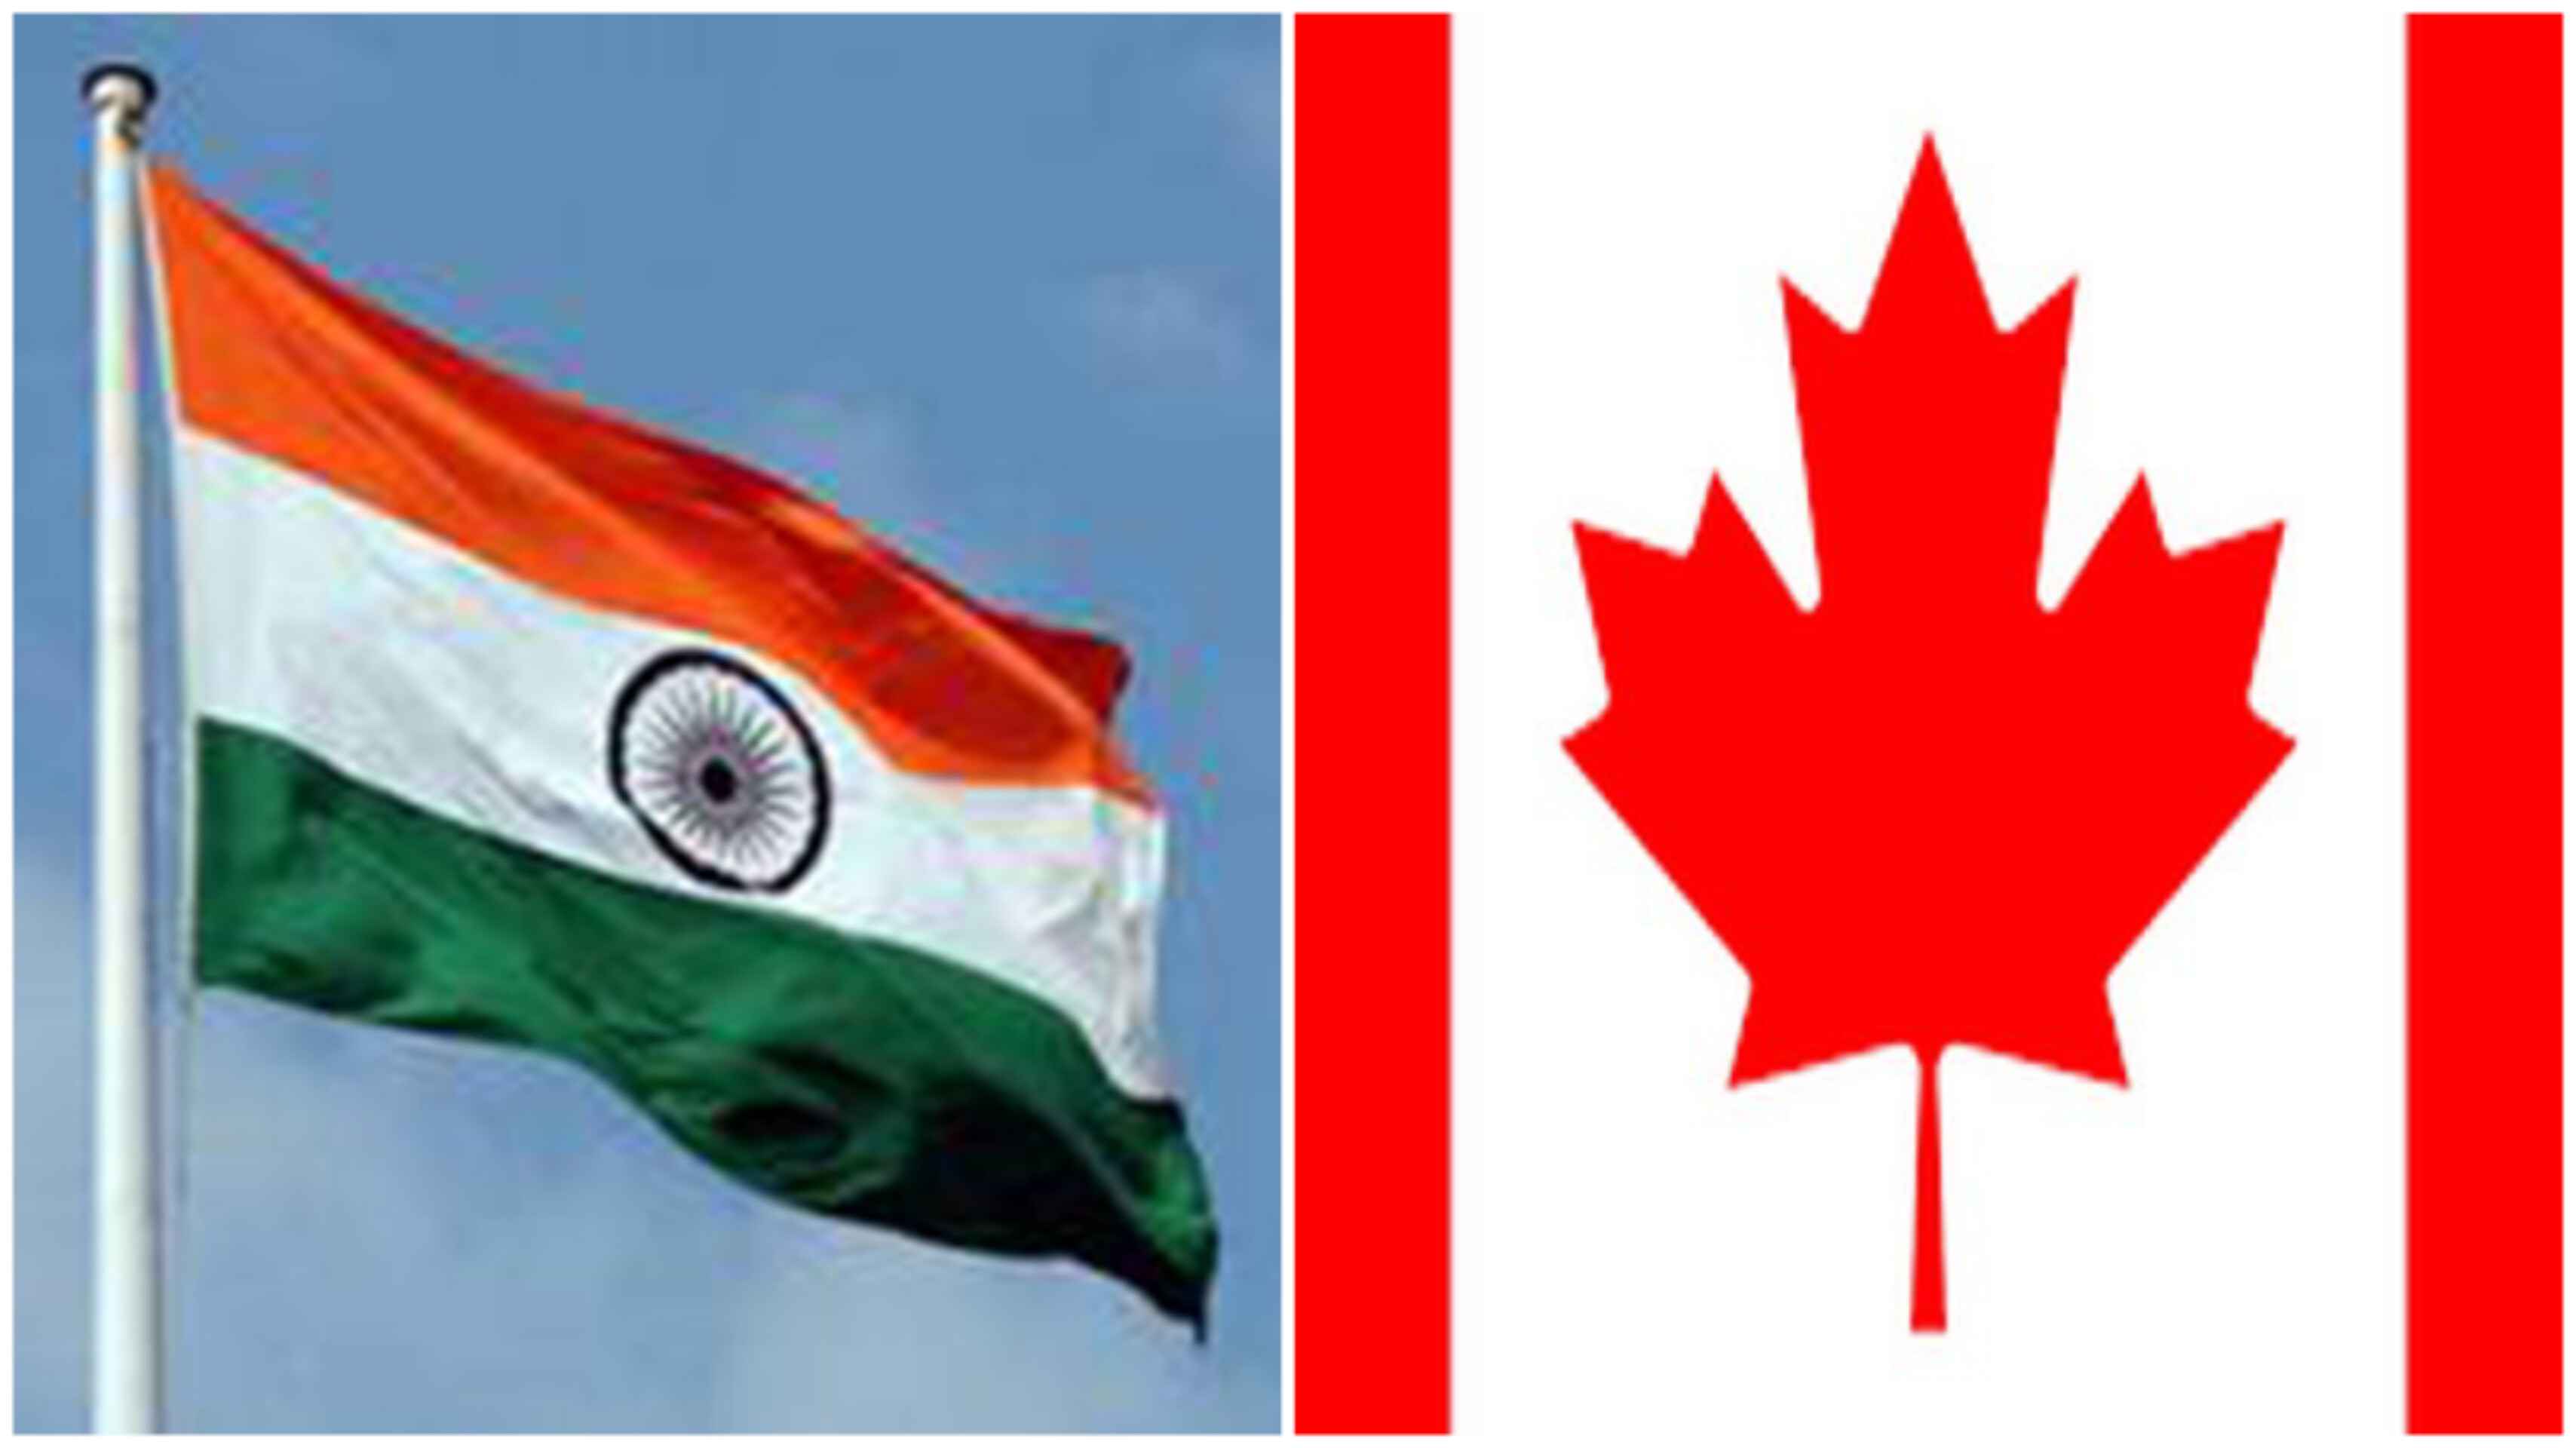 निज्जर हत्या मामला: भारत ने कनाडा से सबूत पेश करने को कहा, ट्रूडो के बयानों को बताया 'नुकसानदायक'